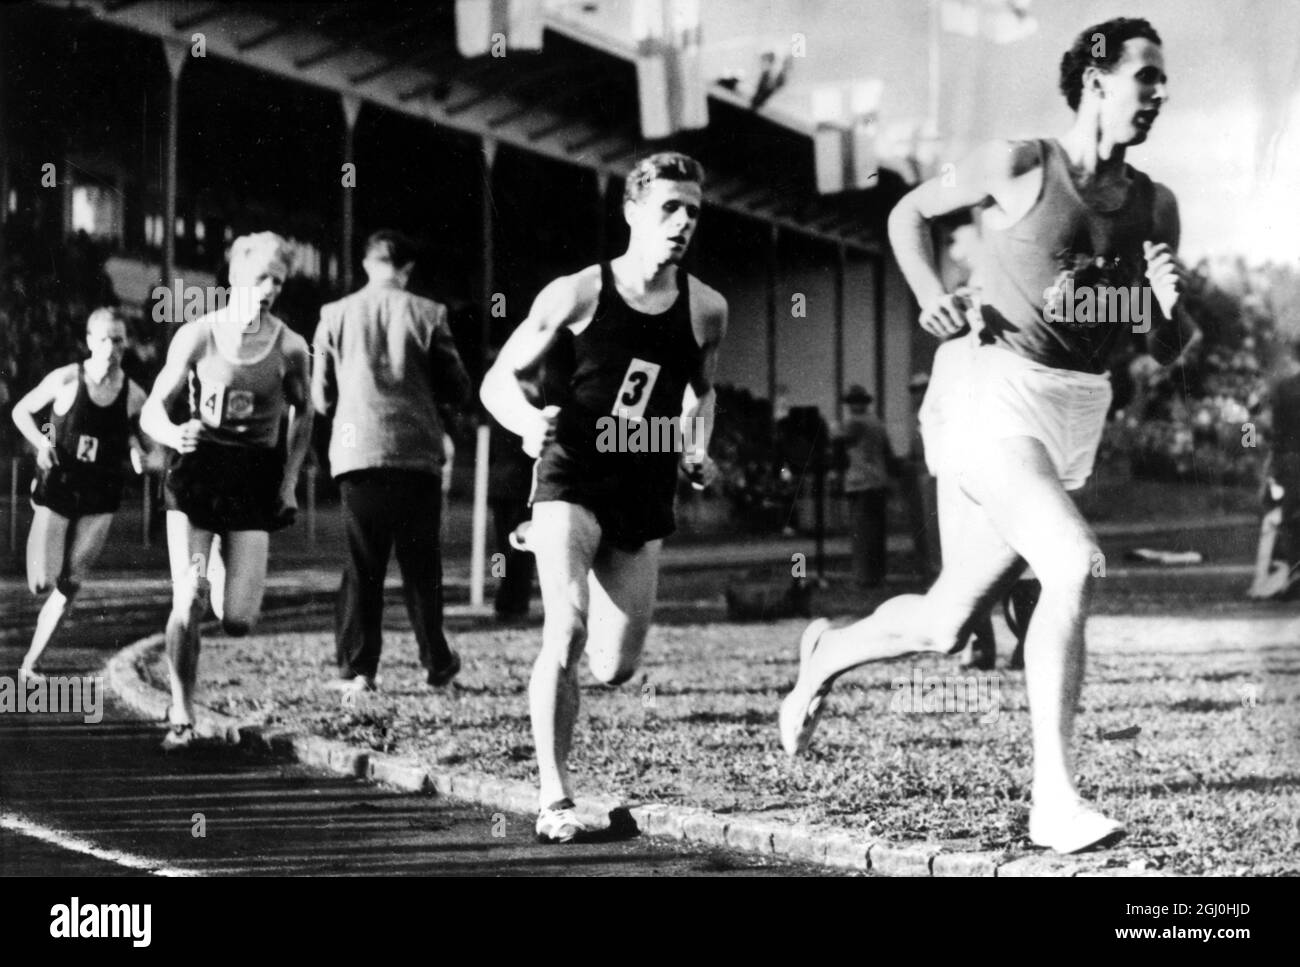 John Landy, uno dei più grandi miler del mondo, guida Urpo Vaharinta, Olavi Vuorisalo e Denis Johansson durante il suo attacco al record di Roger Banister's Mile a Helsinki, Finlandia. 3 giugno 1954. Foto Stock